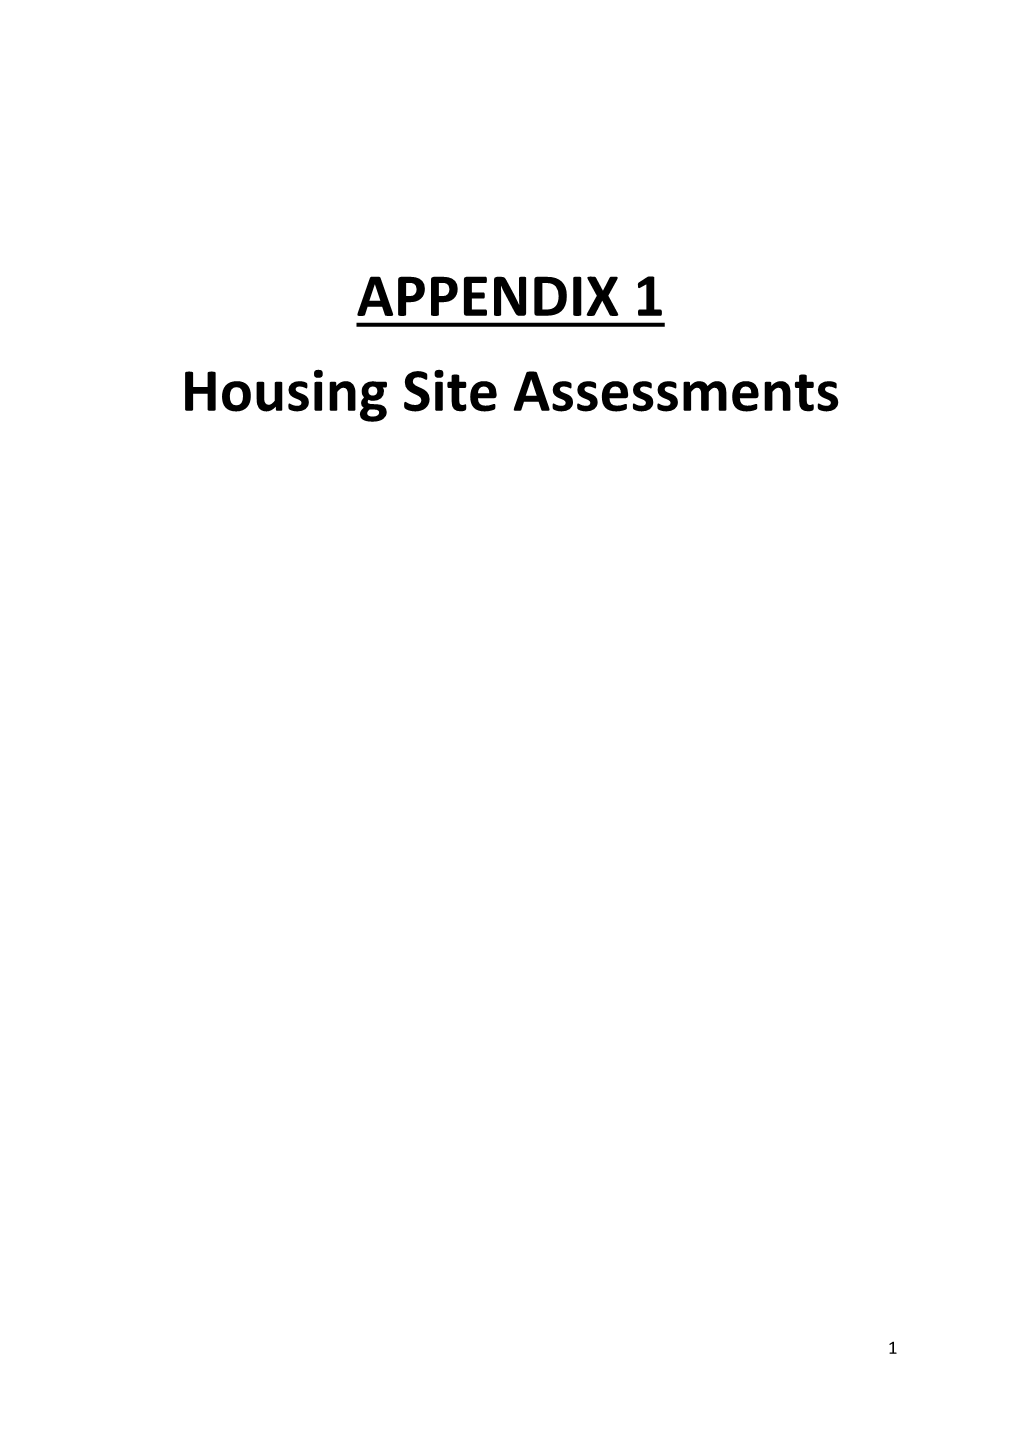 APPENDIX 1 Housing Site Assessments